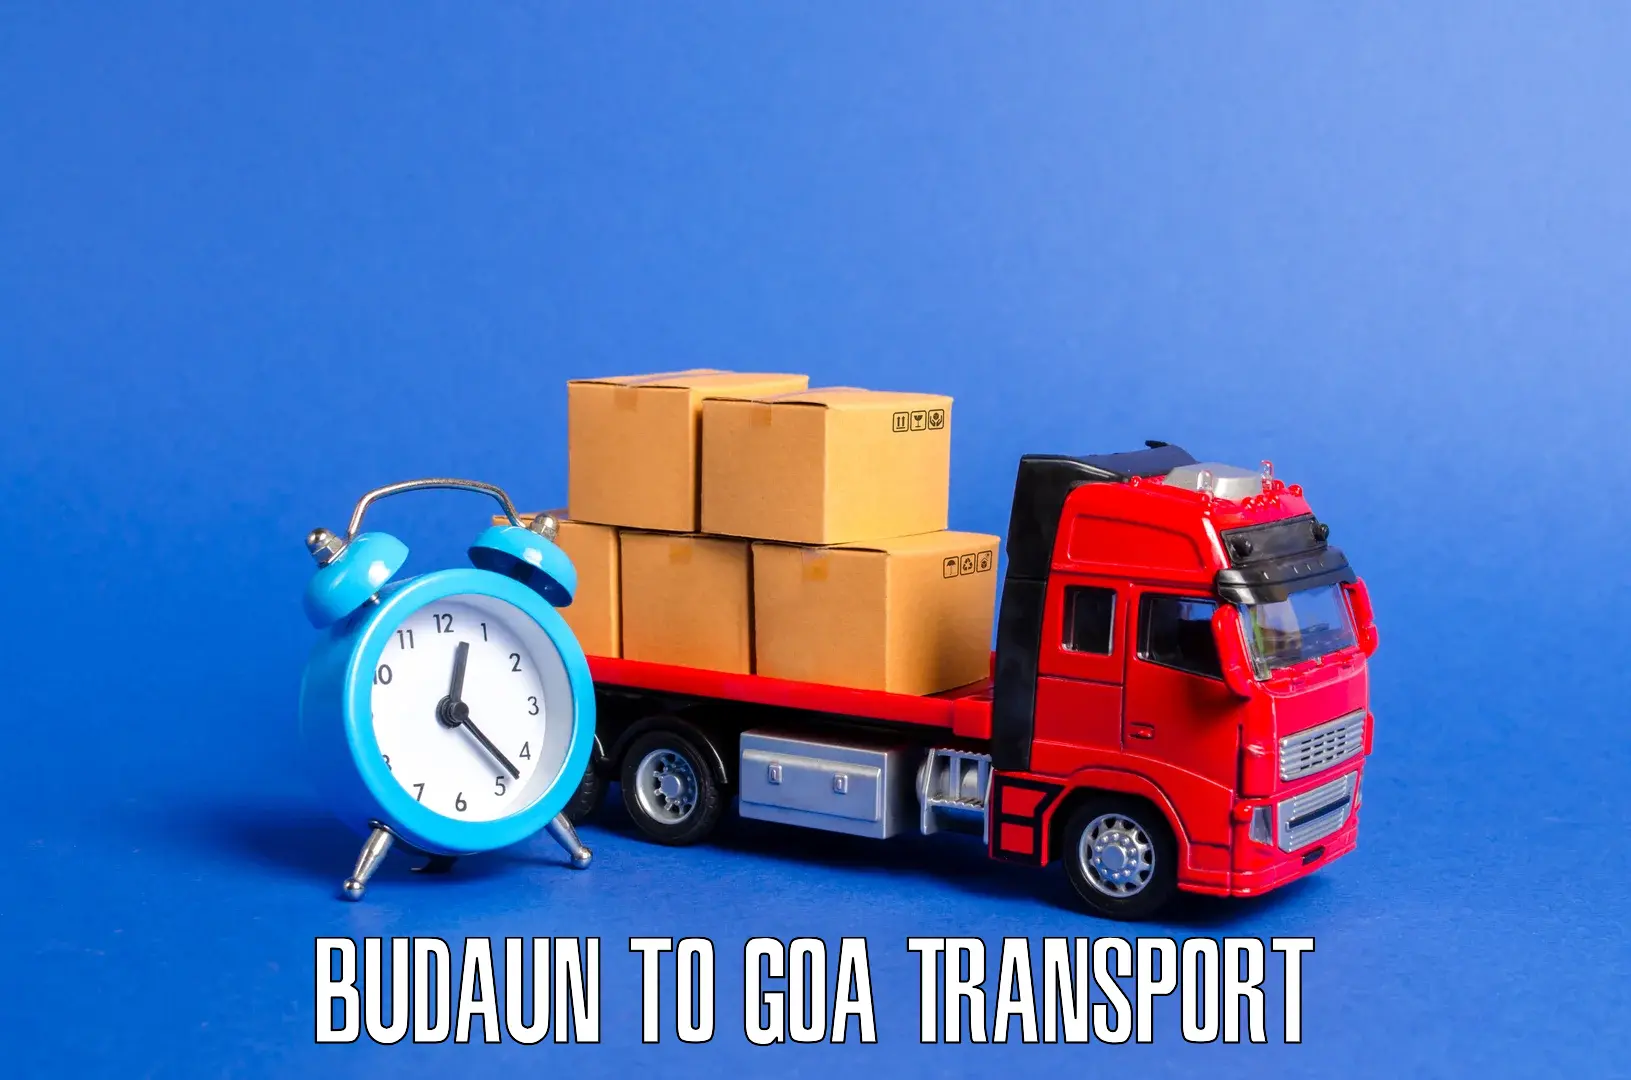 Nearest transport service Budaun to IIT Goa